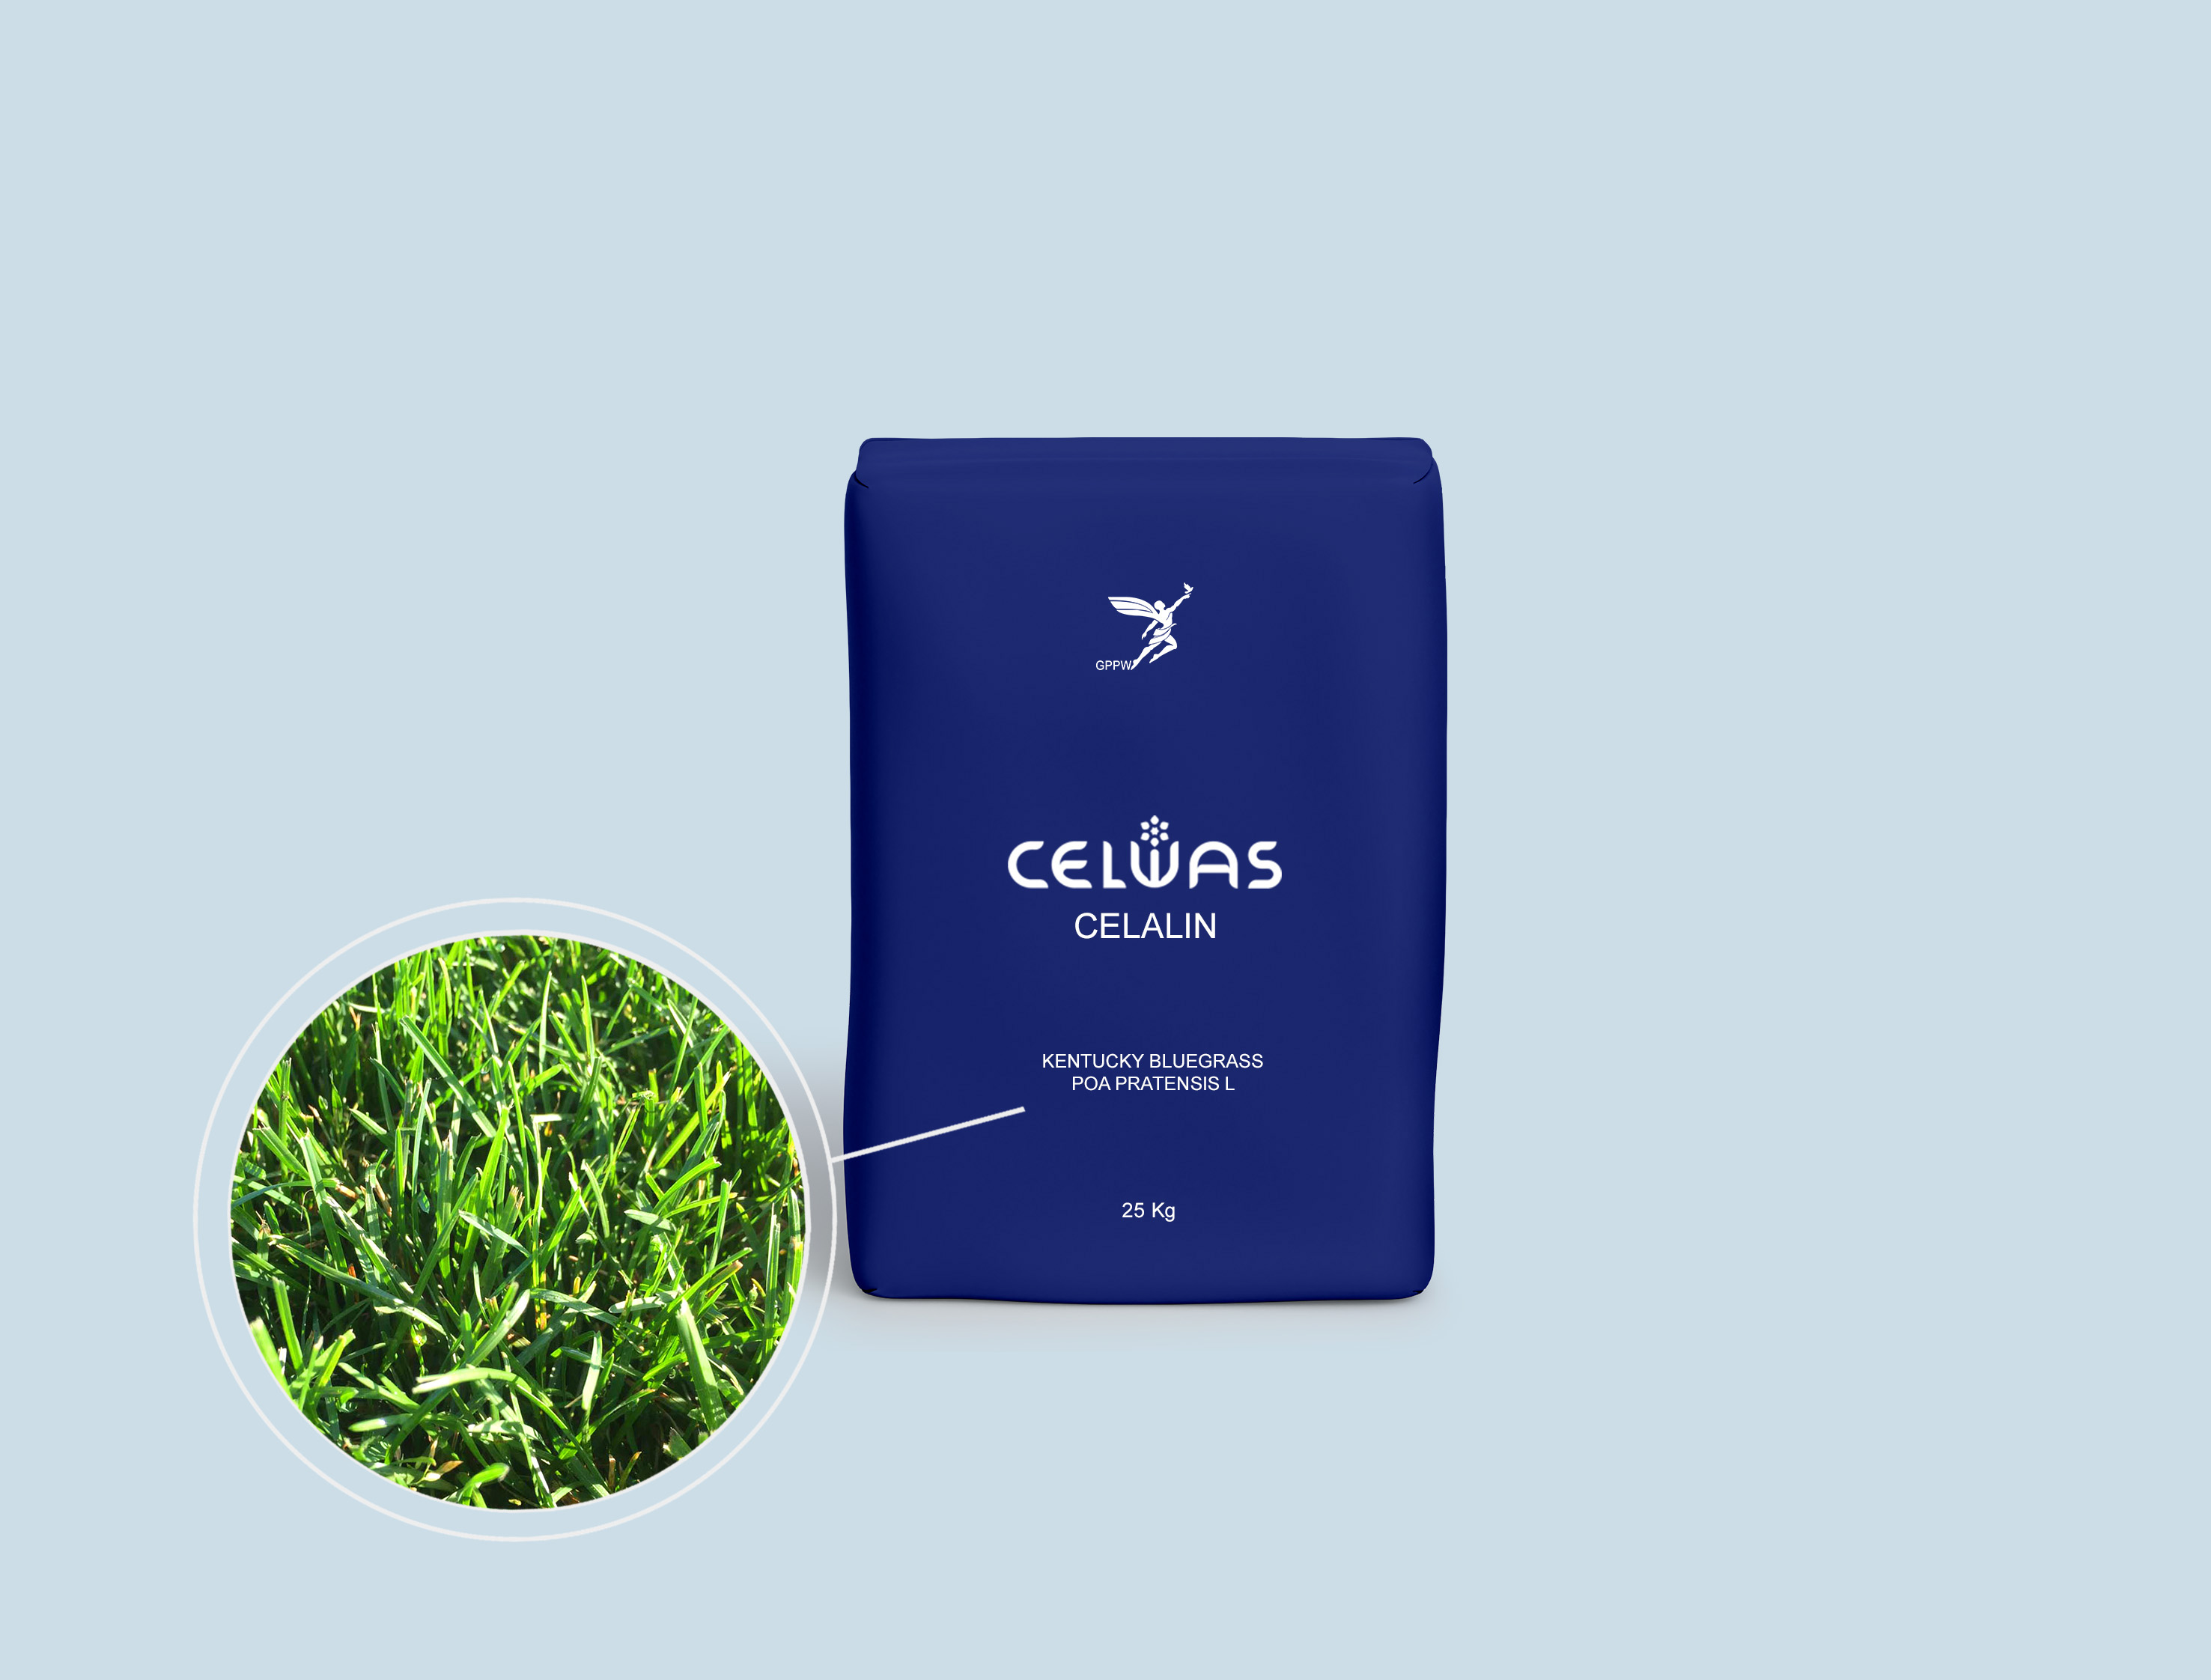 CELALIN<br />fodder grasses and legumes